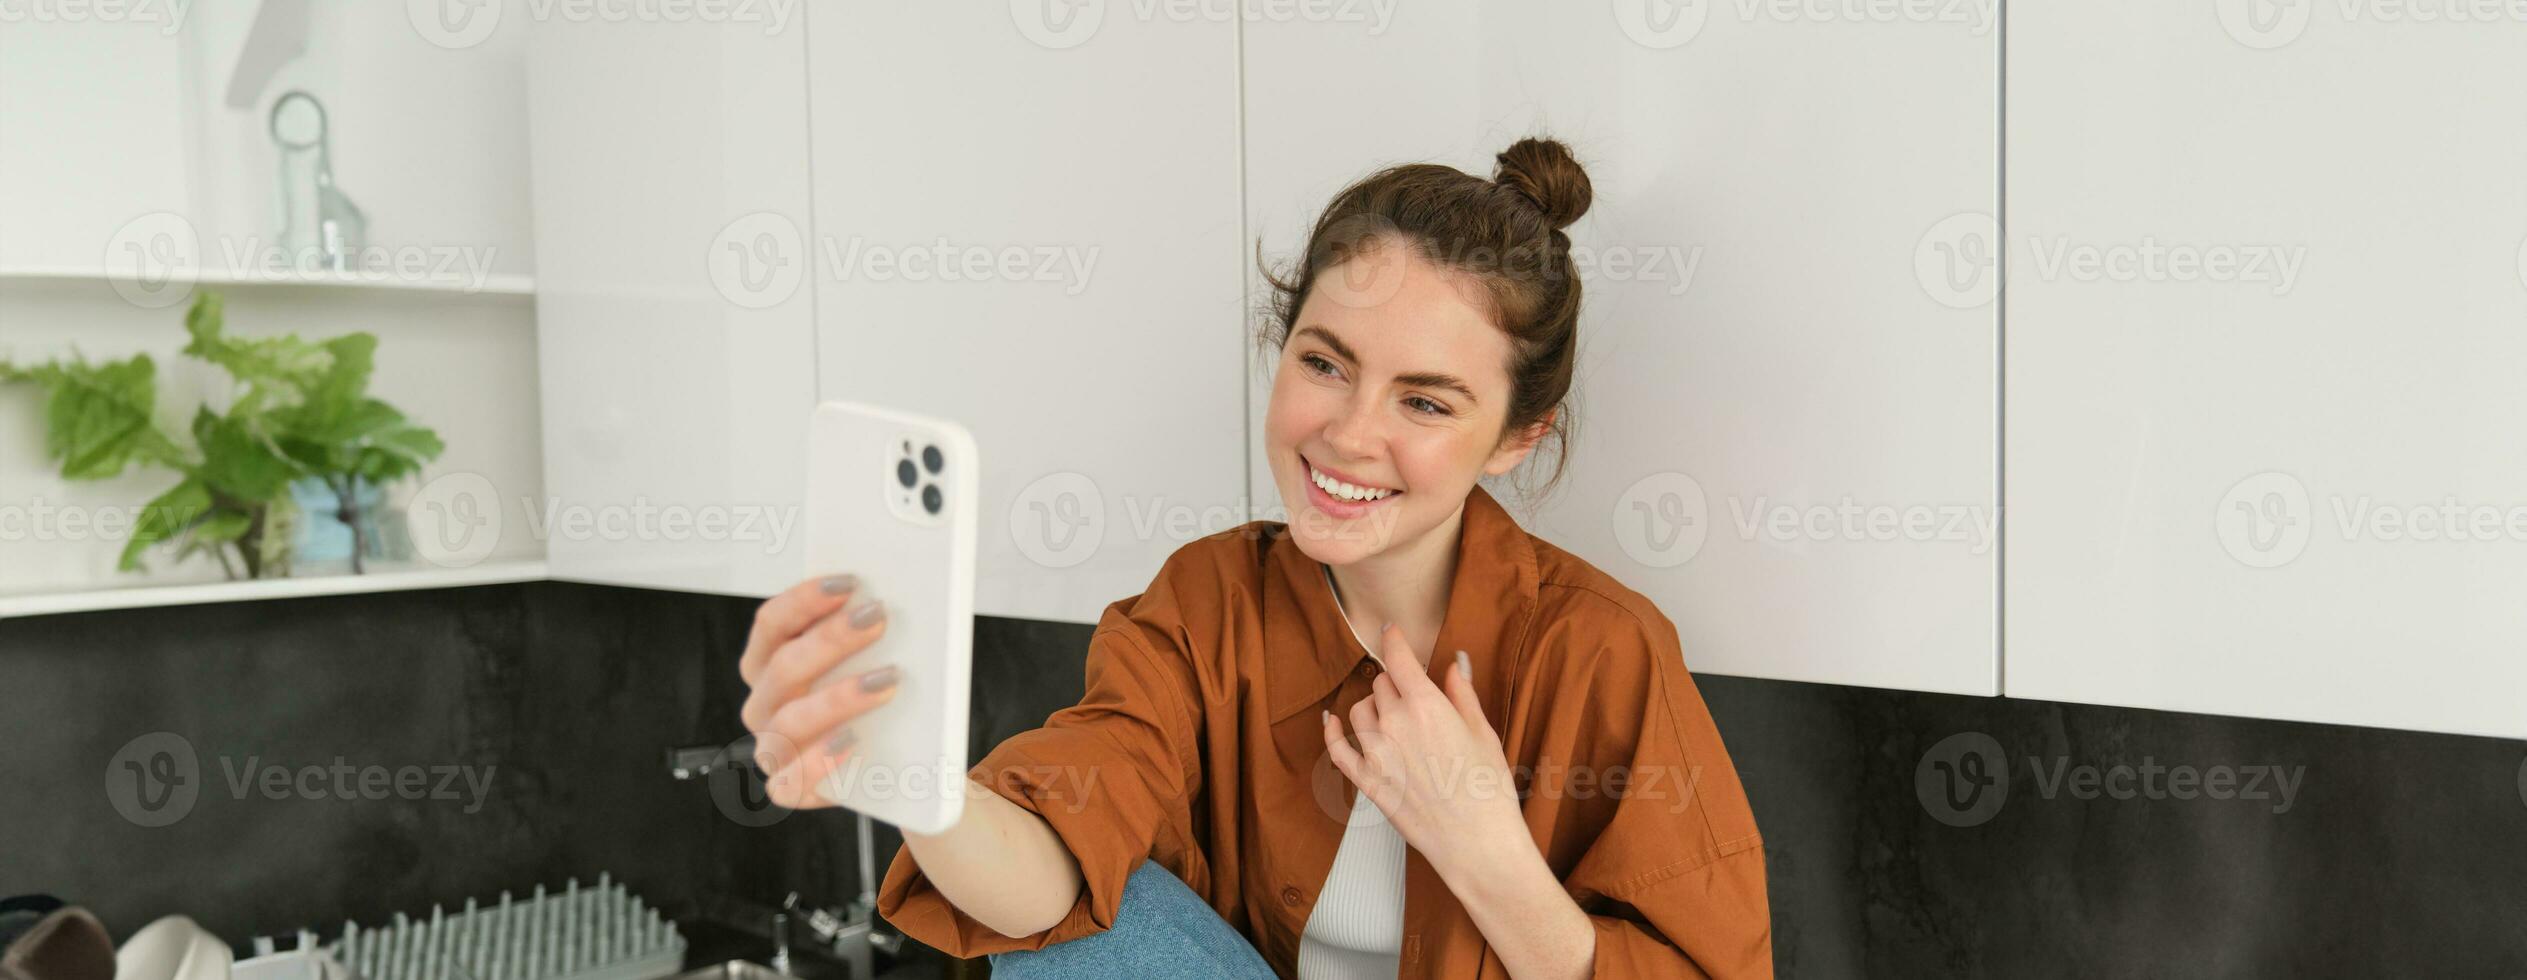 livsstil skott av ung kvinna video chattar, använder sig av smartphone app till prata uppkopplad, uppgifter själv för social media blogg, utseende Lycklig foto